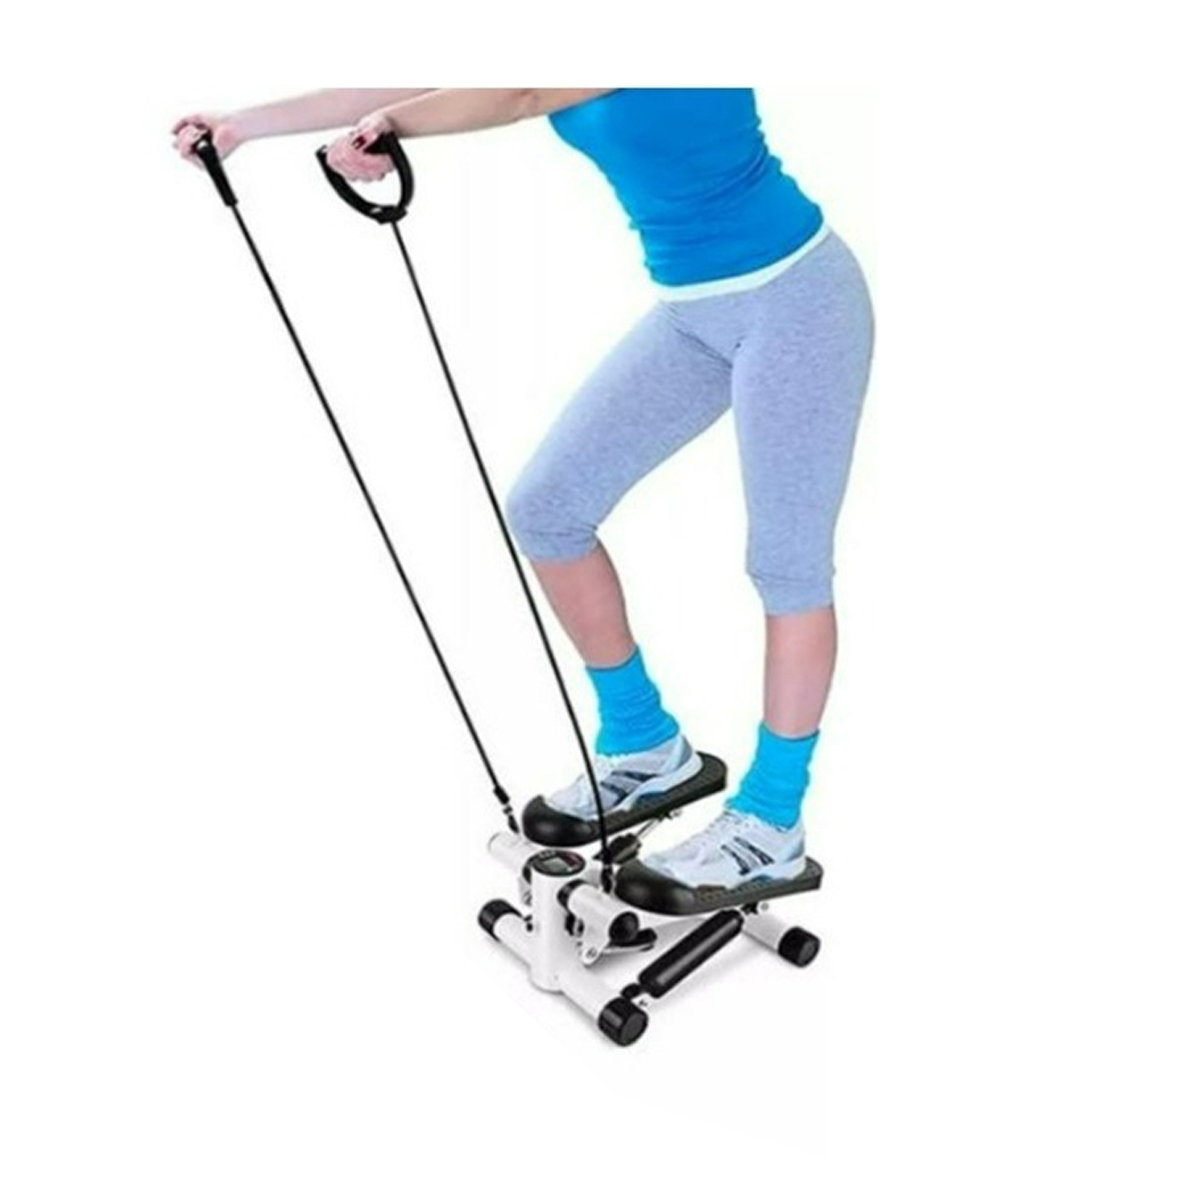 Simulador Caminhada Mini Stepper Exercicio Fisico Fisioterapia Perna Gluteo Braço Corpo Academia Musculaçao Fortalecimento